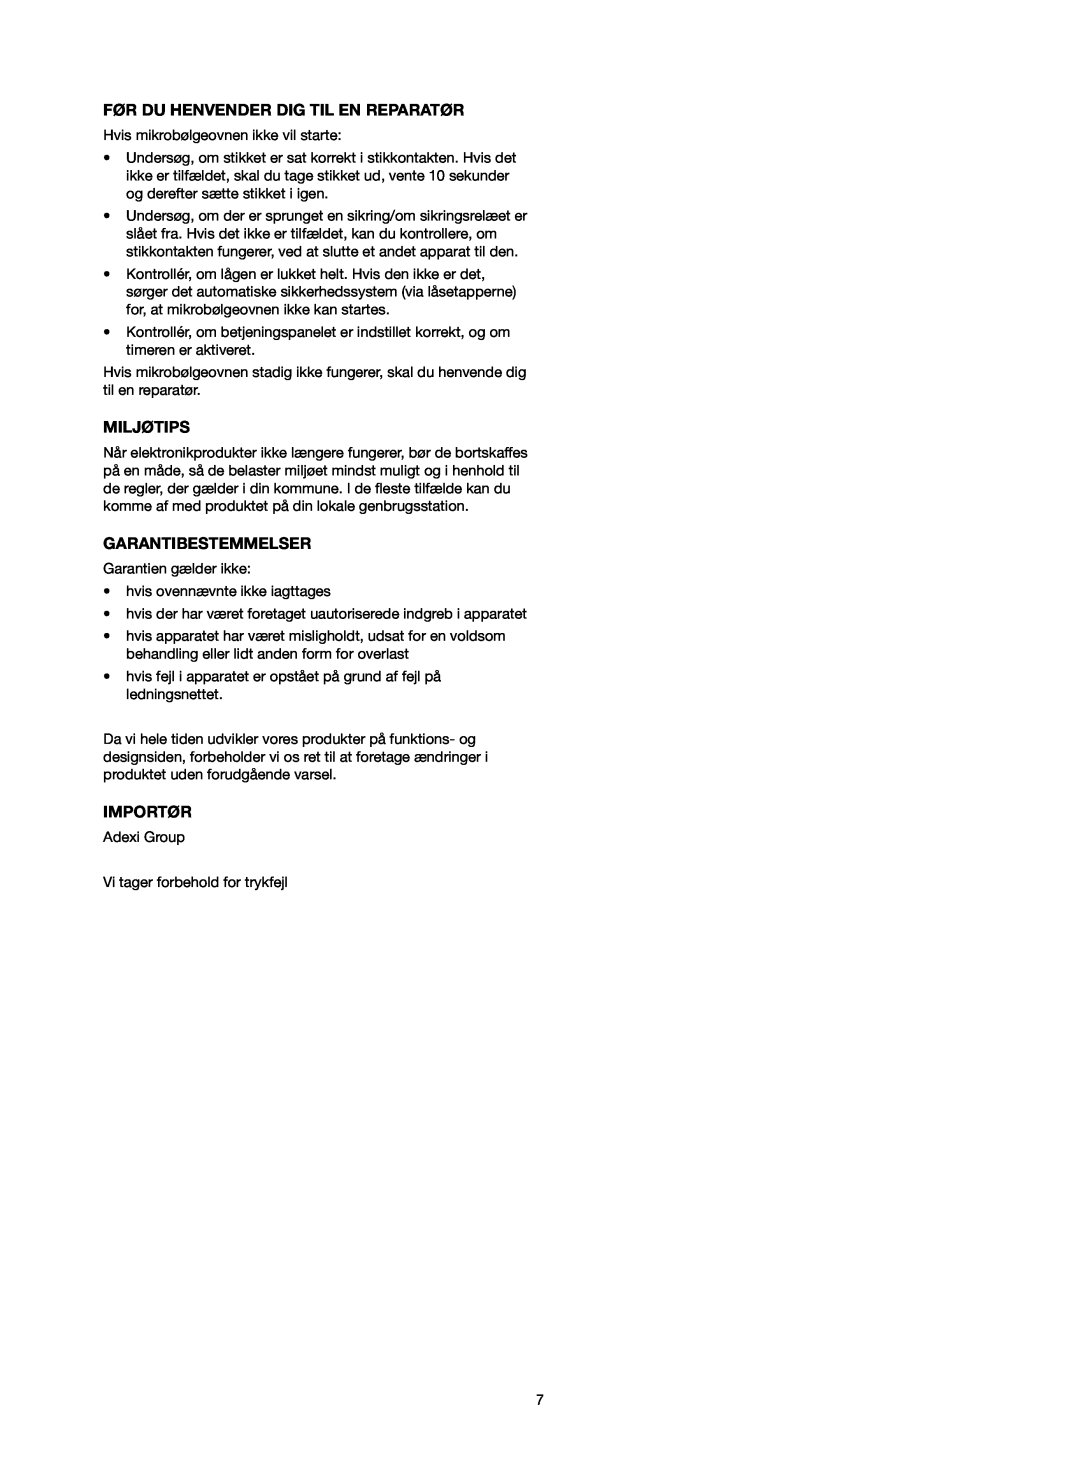 Melissa 753-089 manual Før Du Henvender Dig Til En Reparatør, Miljøtips, Garantibestemmelser, Importør 